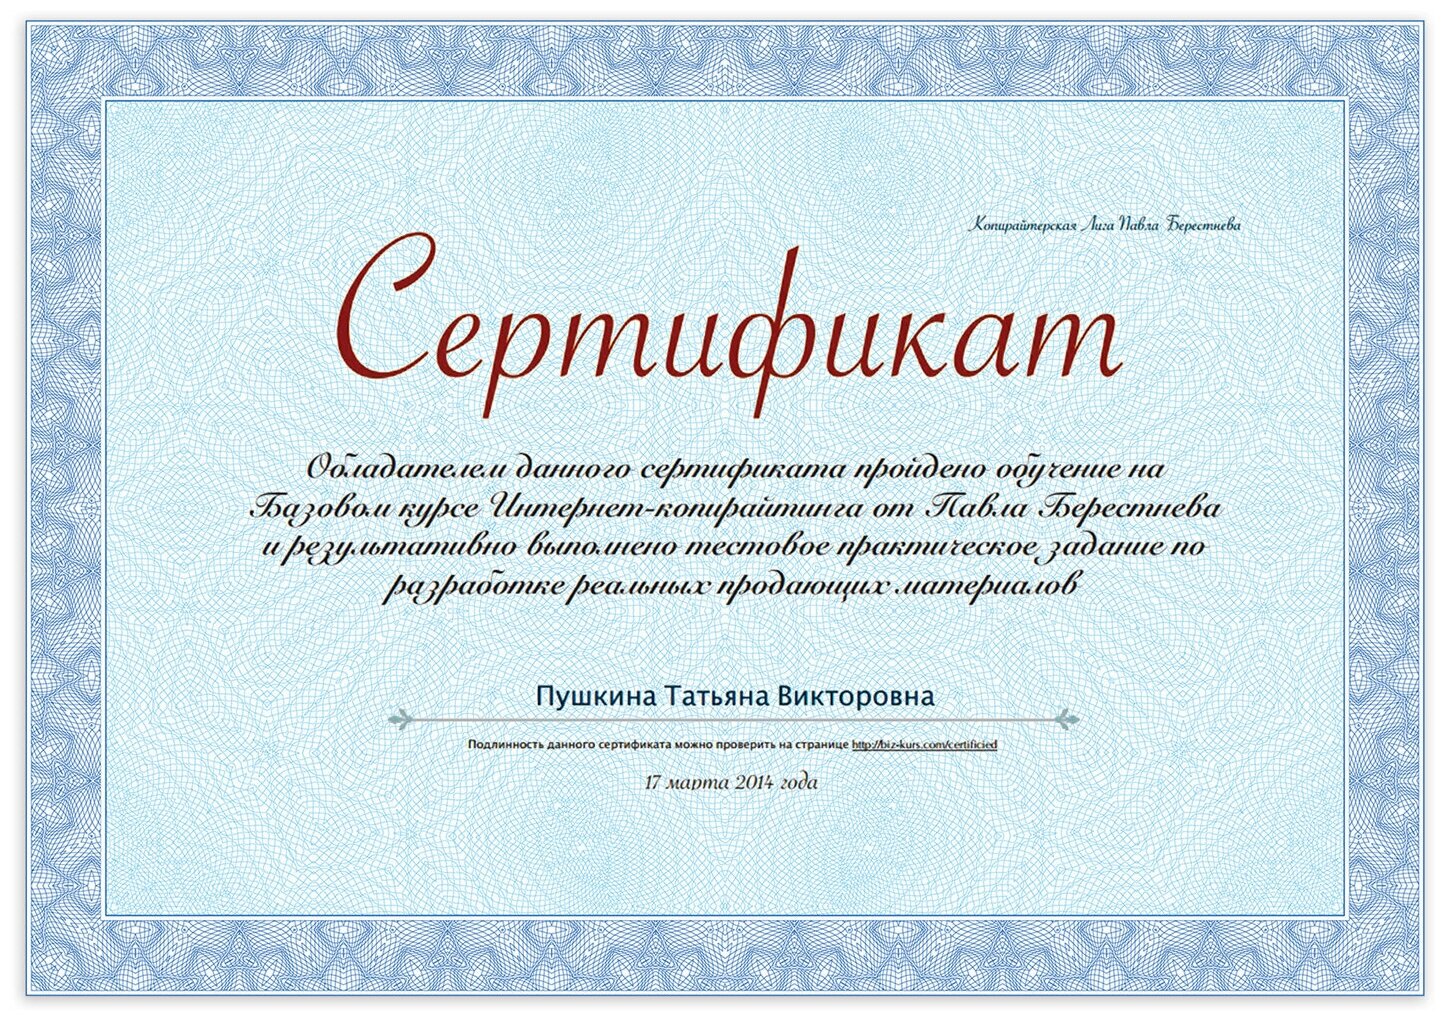 Сертификат-бумага для лазерной печати BRAUBERG, А4, 25 листов, 115 г/м2, "Голубая сеточка", 122618 В комплекте: 1шт.